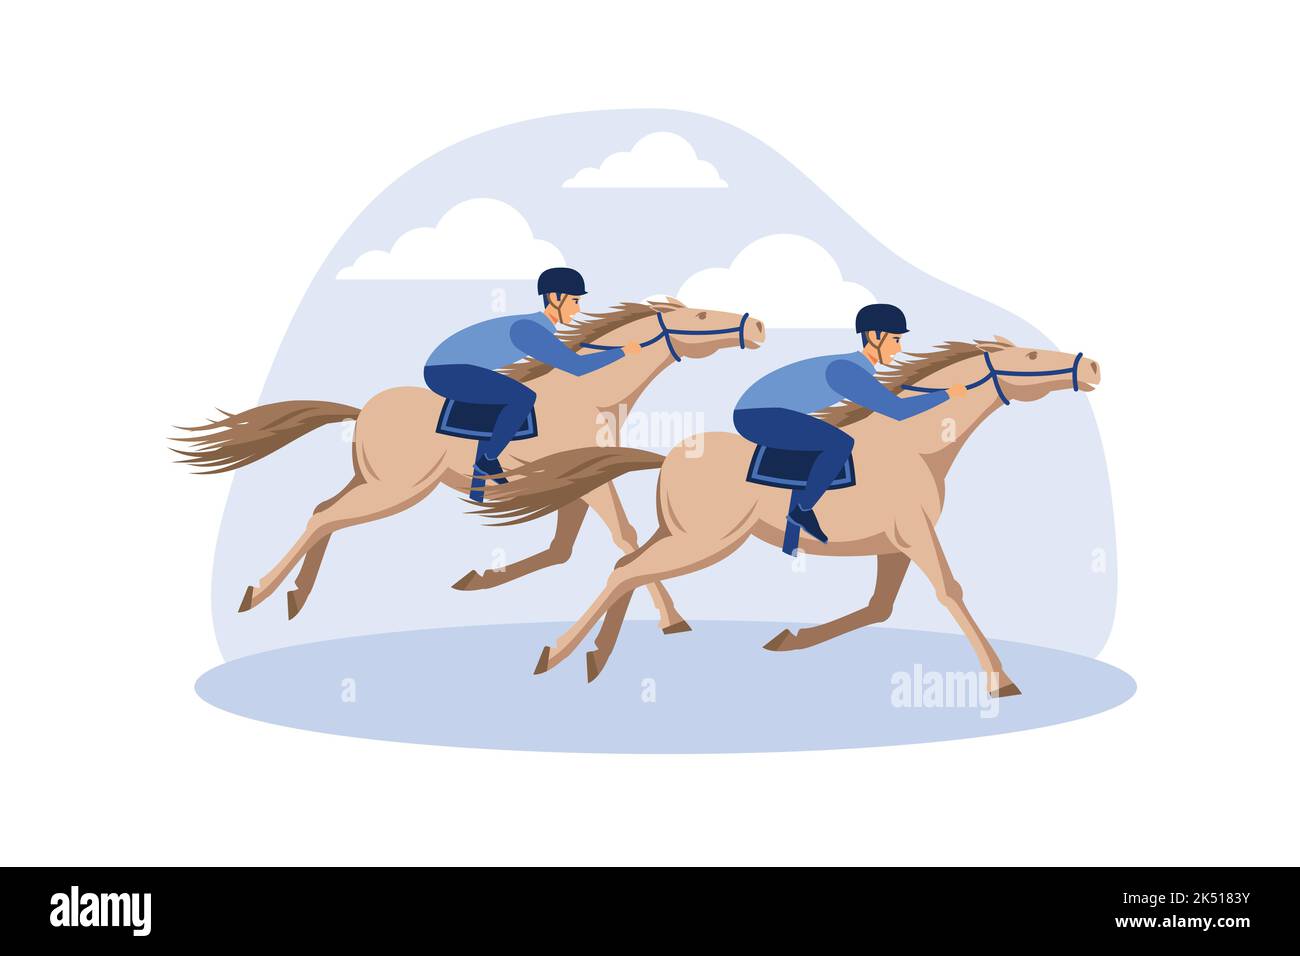 Pferderennen. Pferderennen Wettbewerbe. Flache Vektor-Illustration Stock Vektor